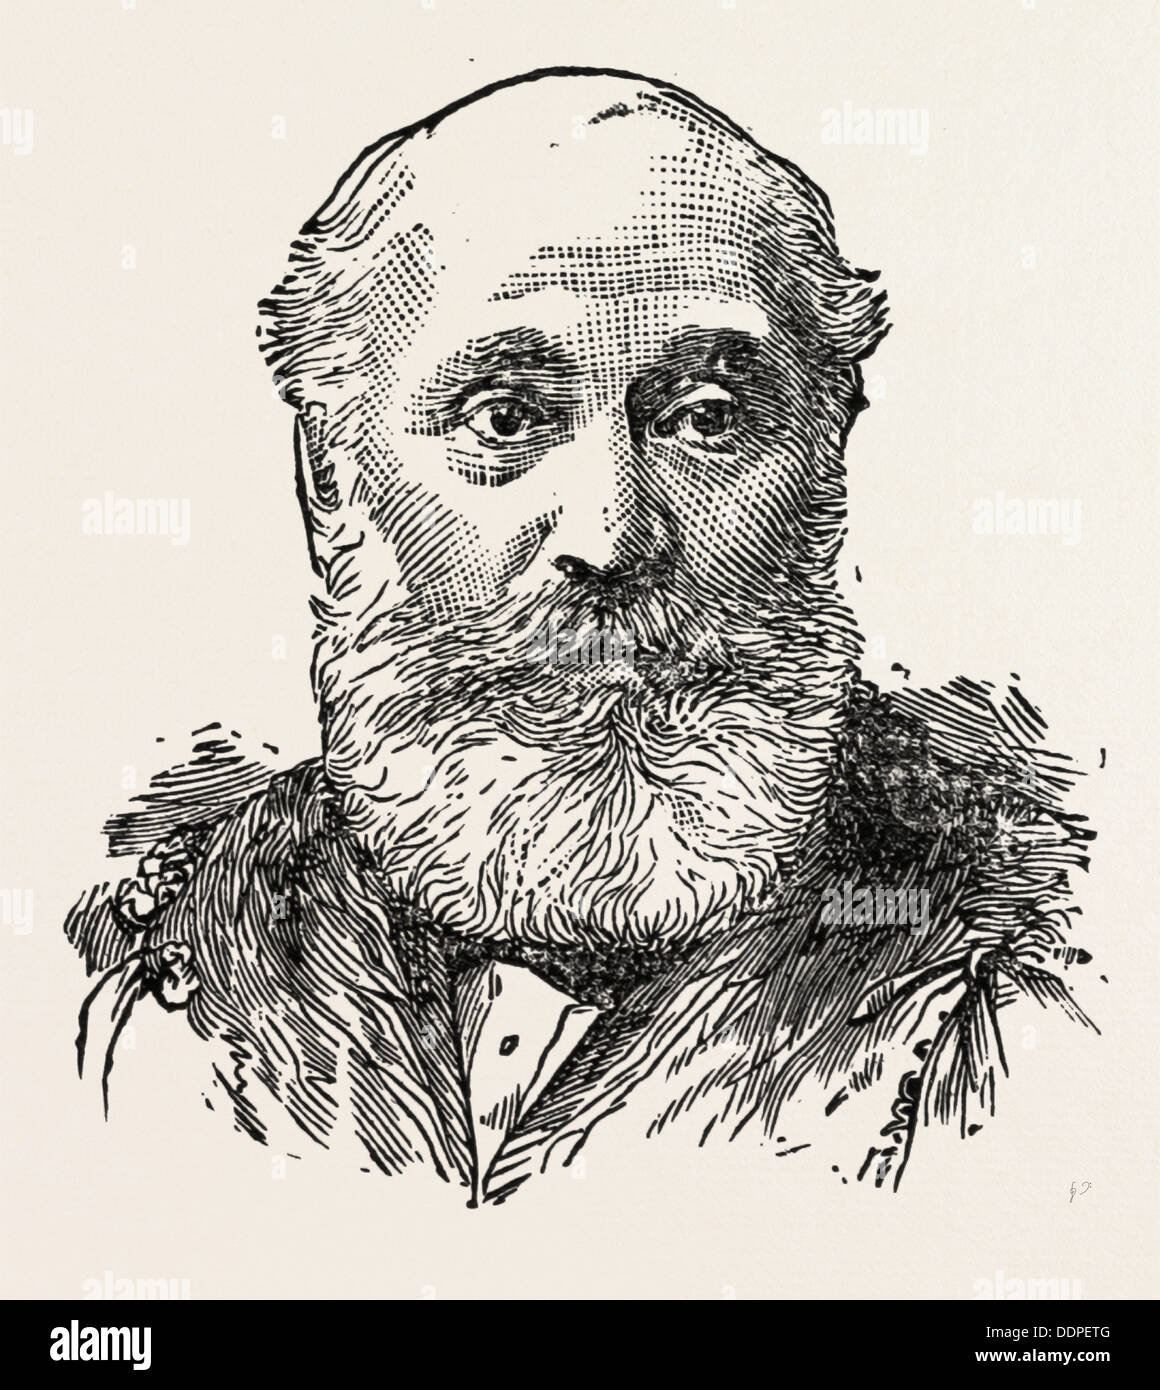 M. COSSHAM HANDEL Député de East Bristol, gravure 1890, UK, Royaume-Uni, Angleterre, Grande-Bretagne, Europe, Royaume-Uni, Grande Bretagne Banque D'Images